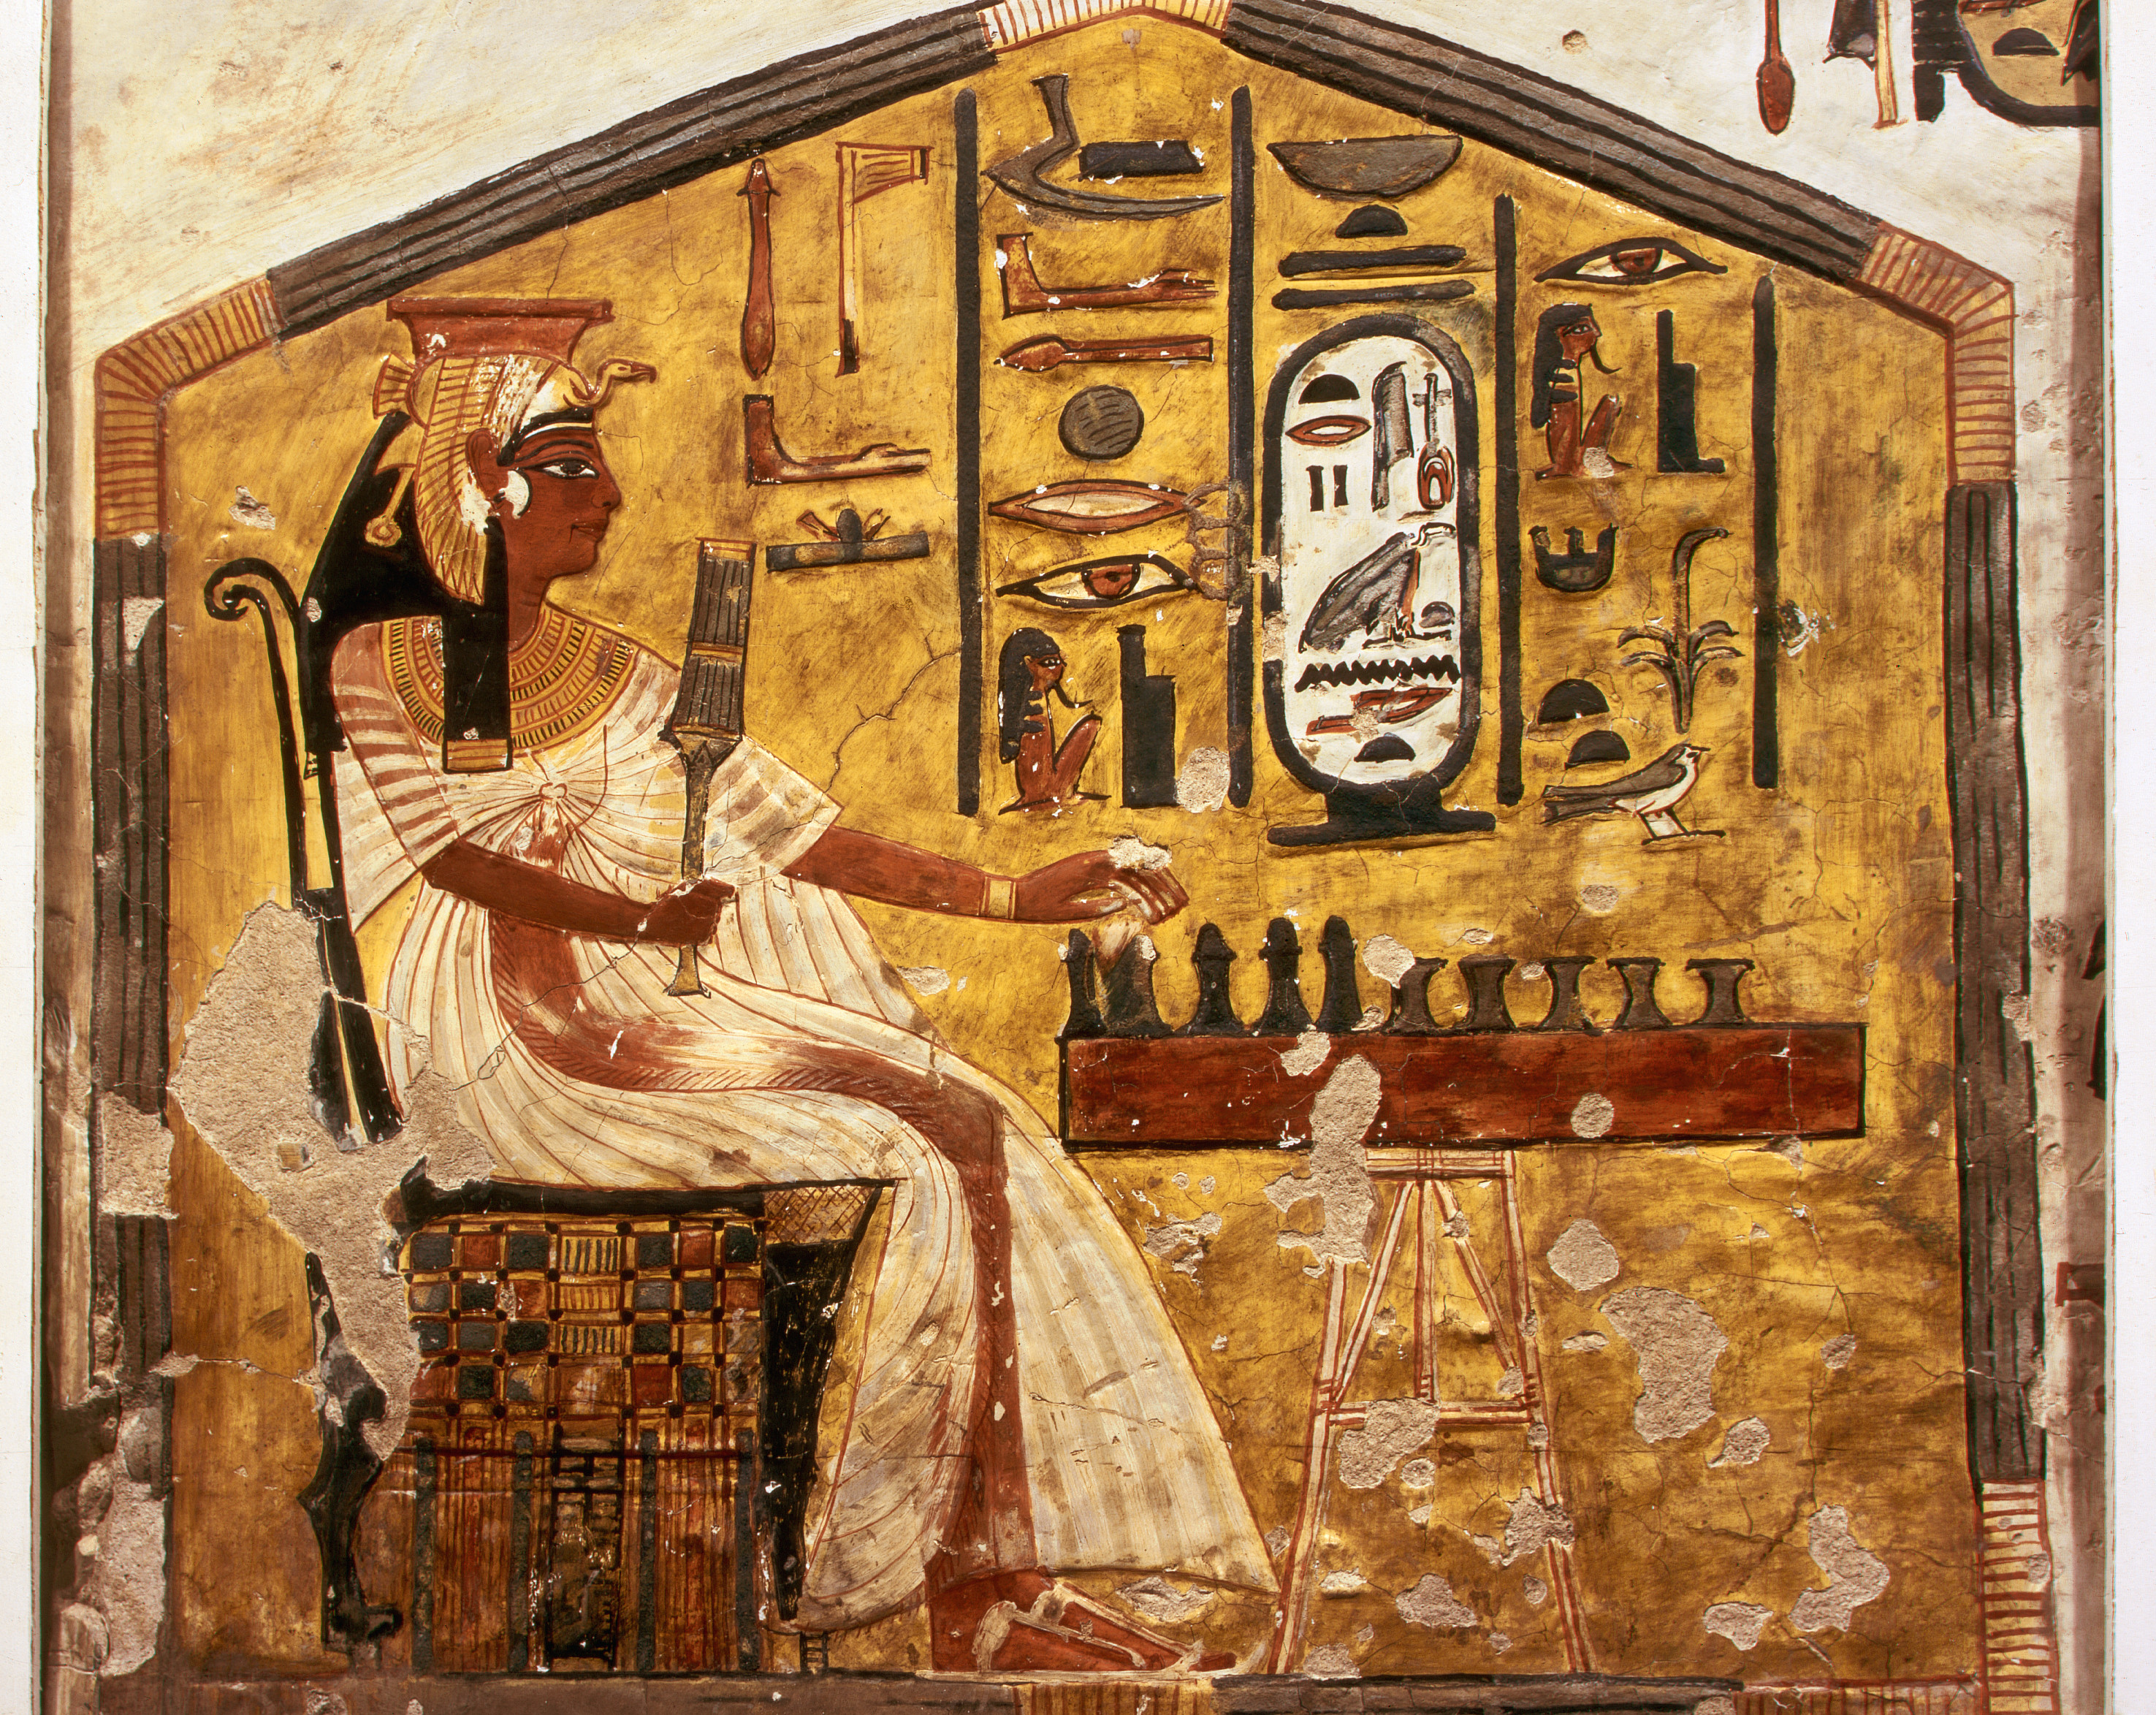 الملكة و هي تلعب سينيت by غير معروف فنان - c. 1255 ق.م 